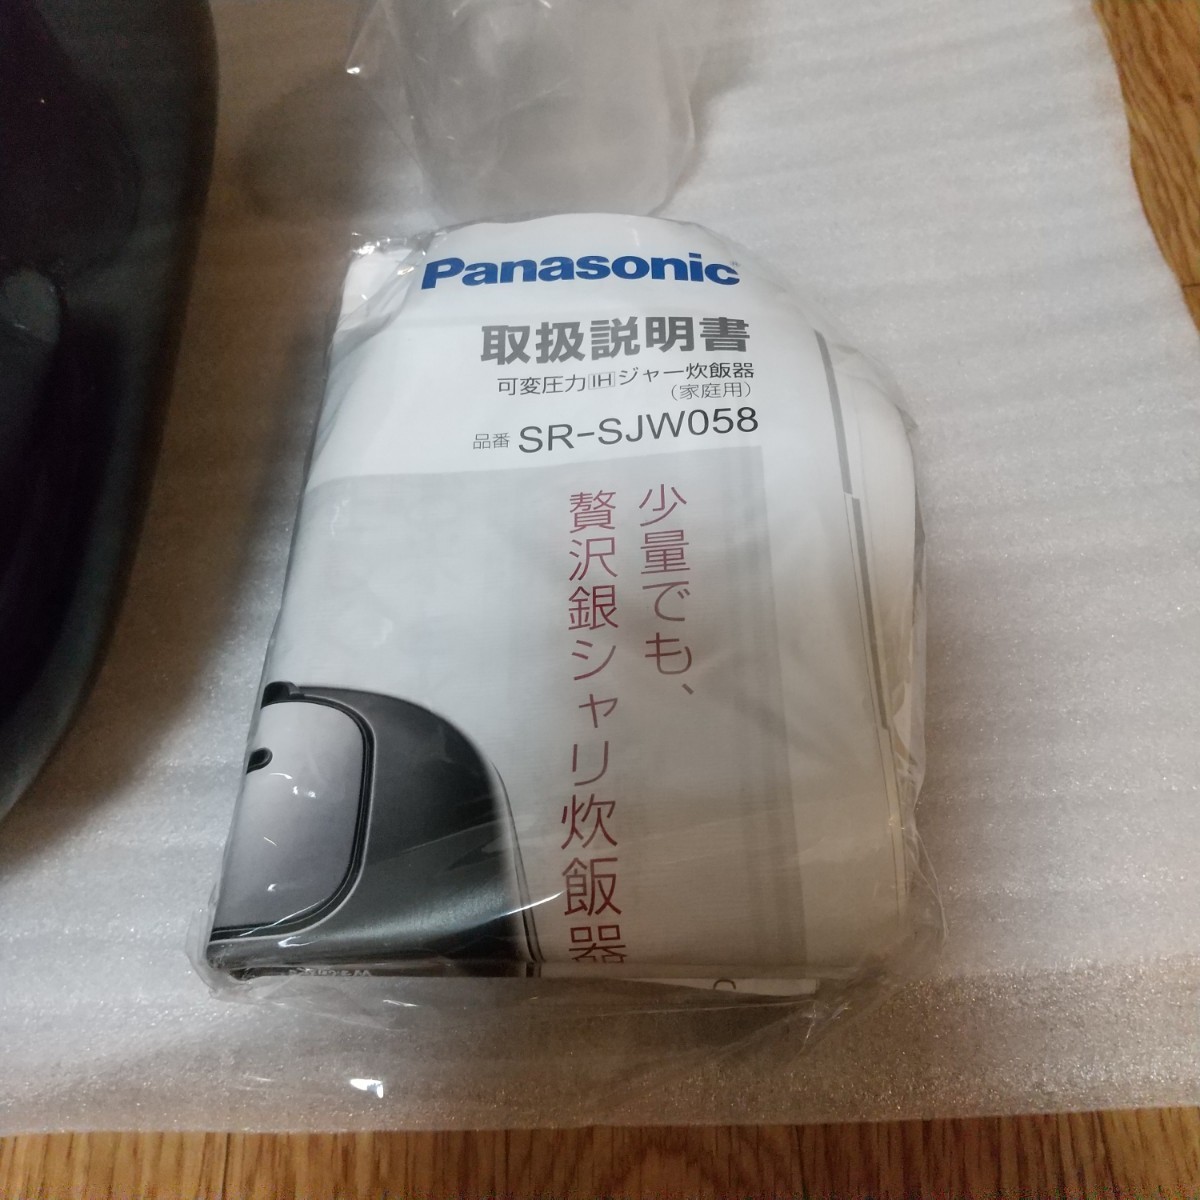 【美品】 Panasonic パナソニック 炊飯器 3合 可変圧力IH式 Wおどり炊き SR-JW0